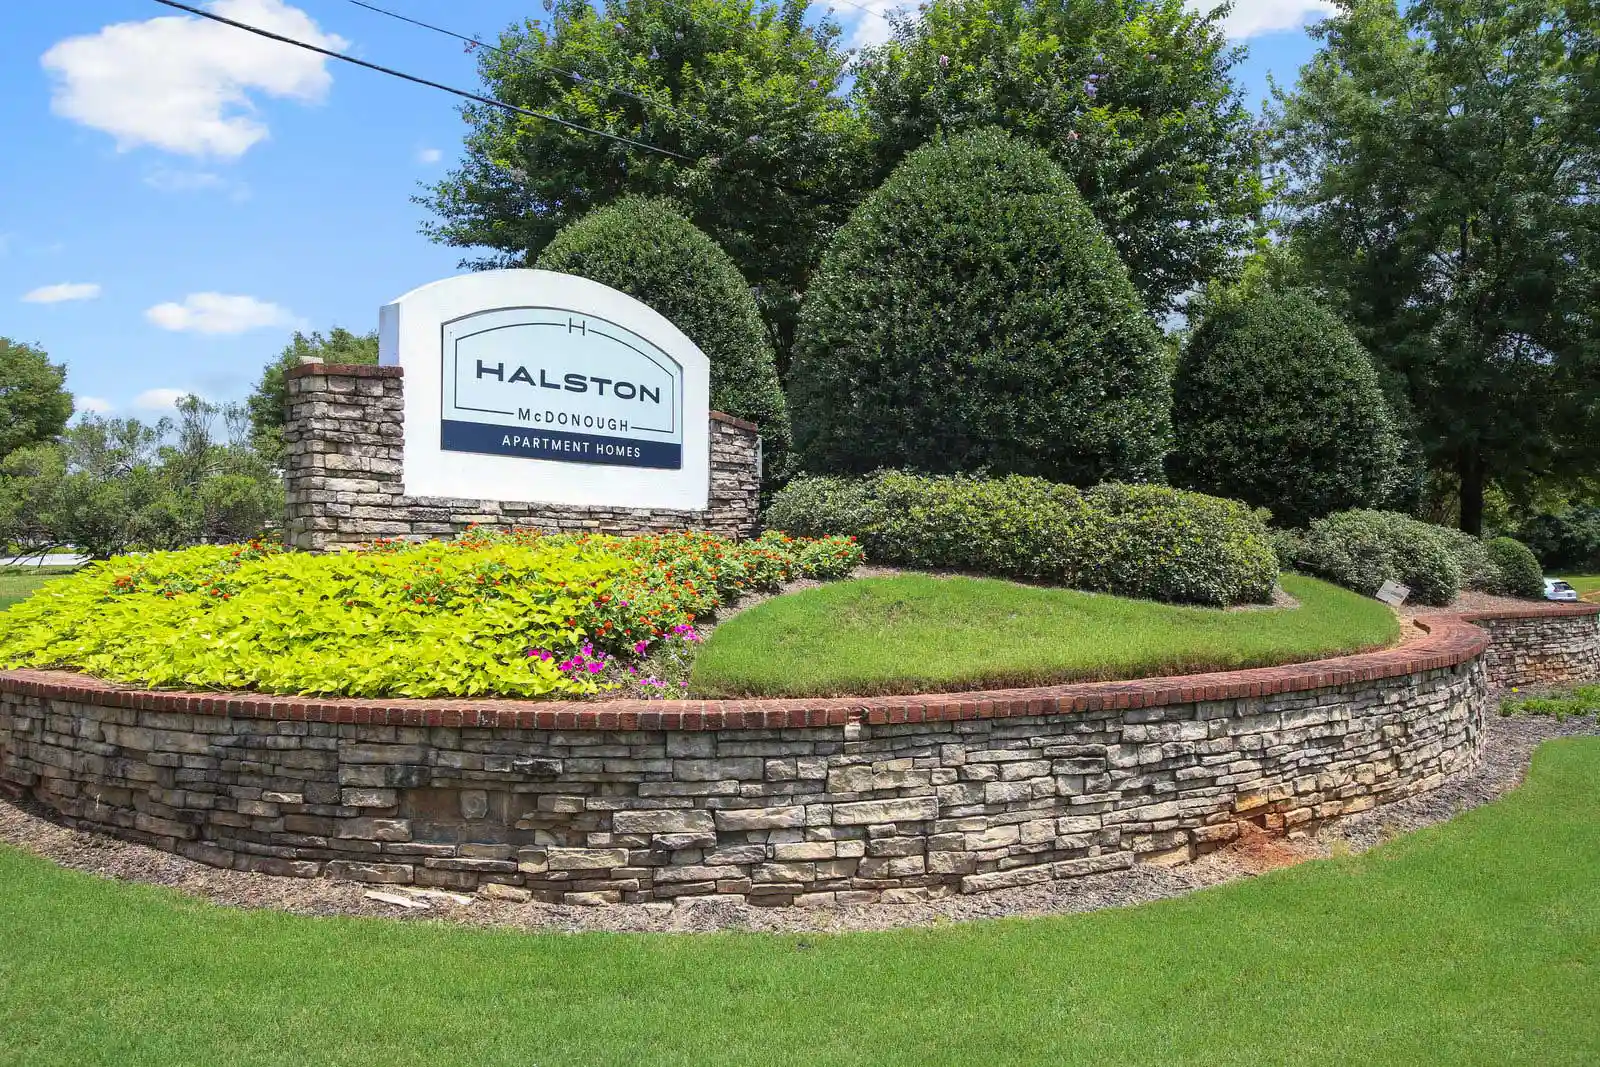 Halston McDonough sign